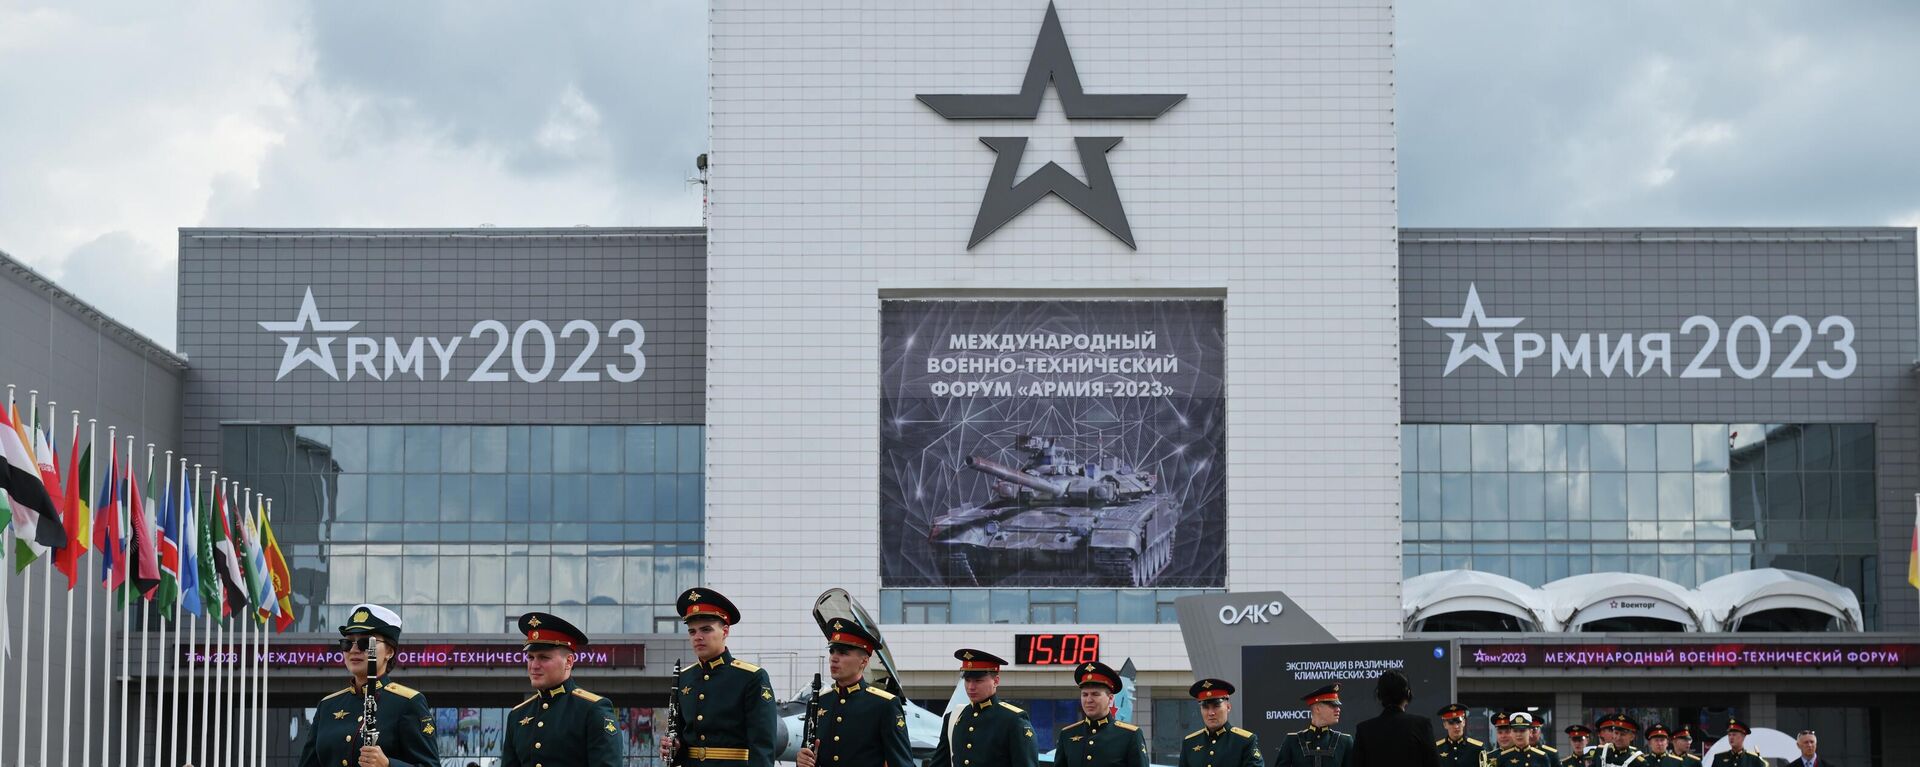 モスクワ郊外で開催されている国際軍事技術展示会「アルミヤ2023（Army2023）」 - Sputnik 日本, 1920, 20.08.2023